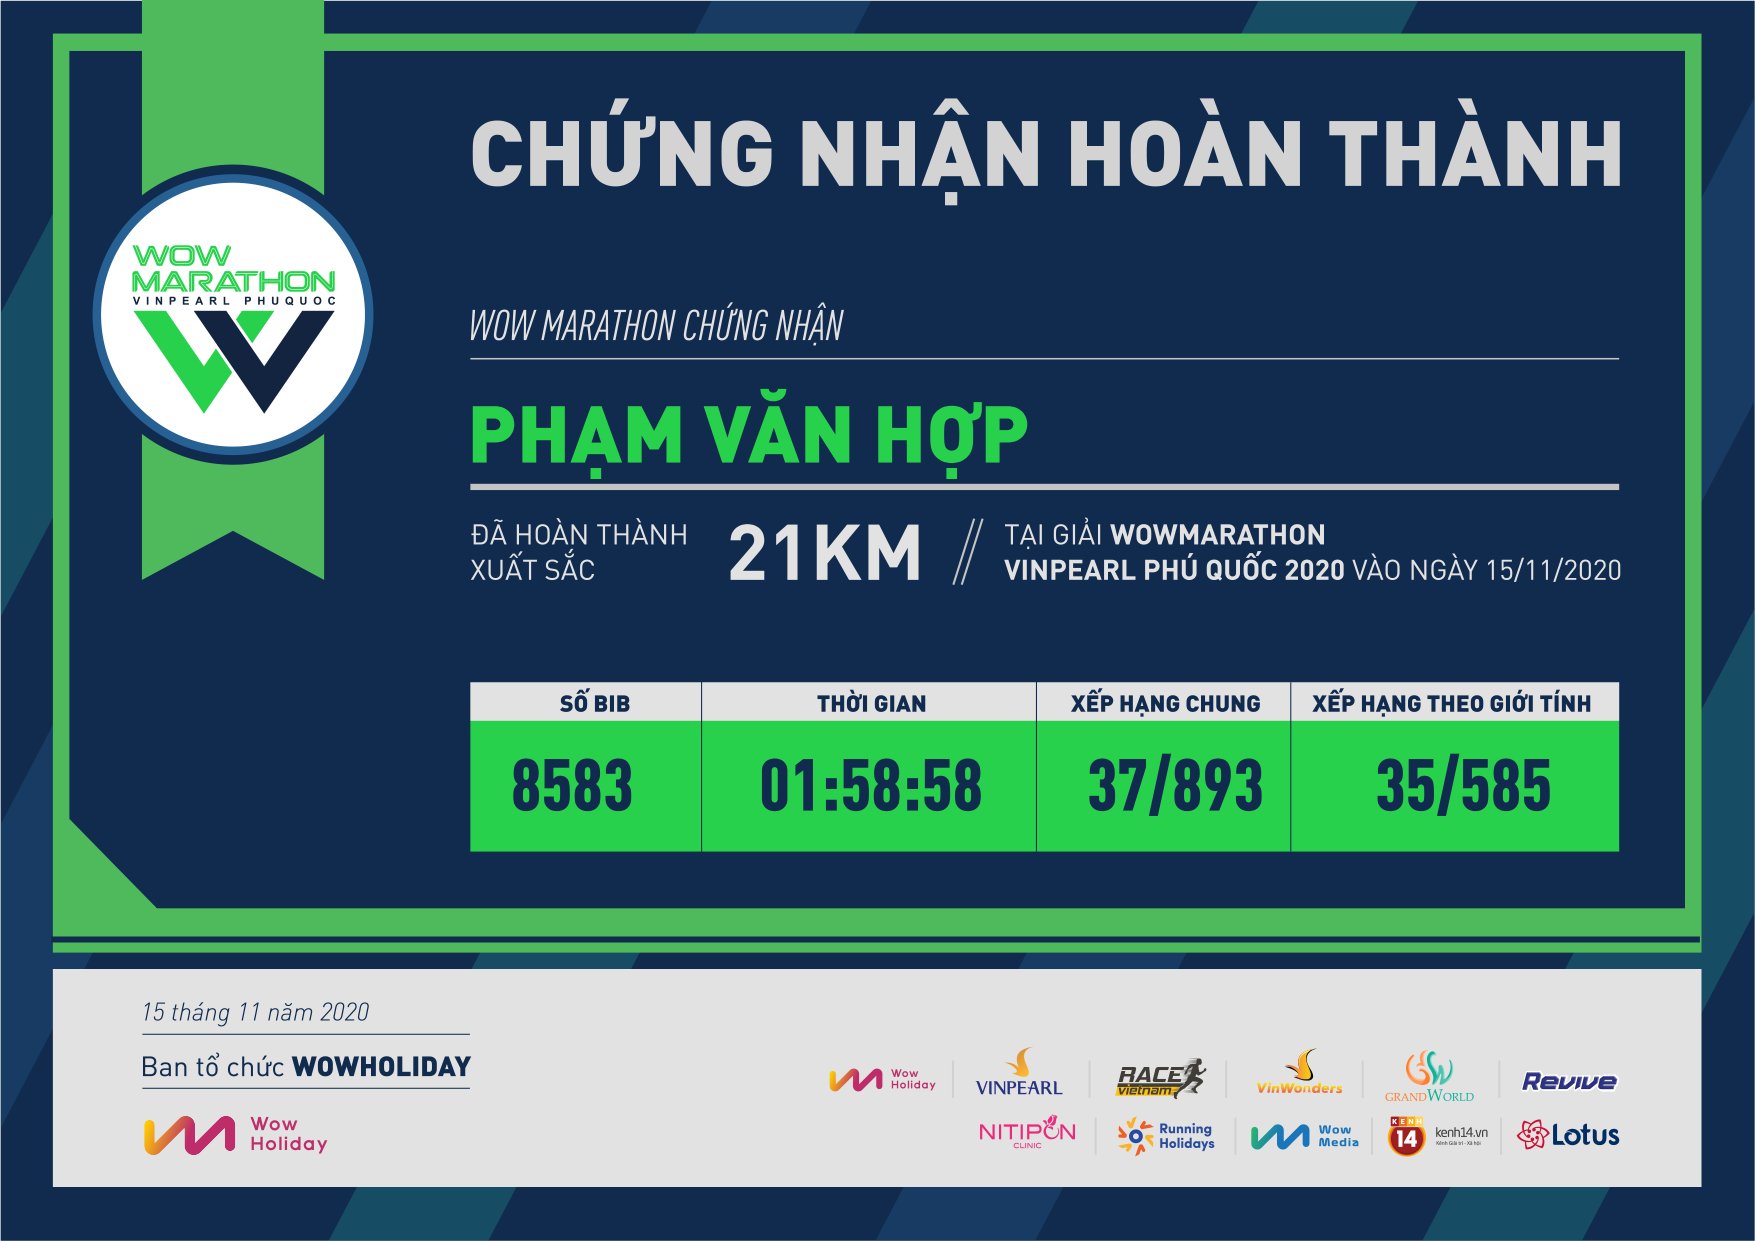 8583 - Phạm Văn Hợp